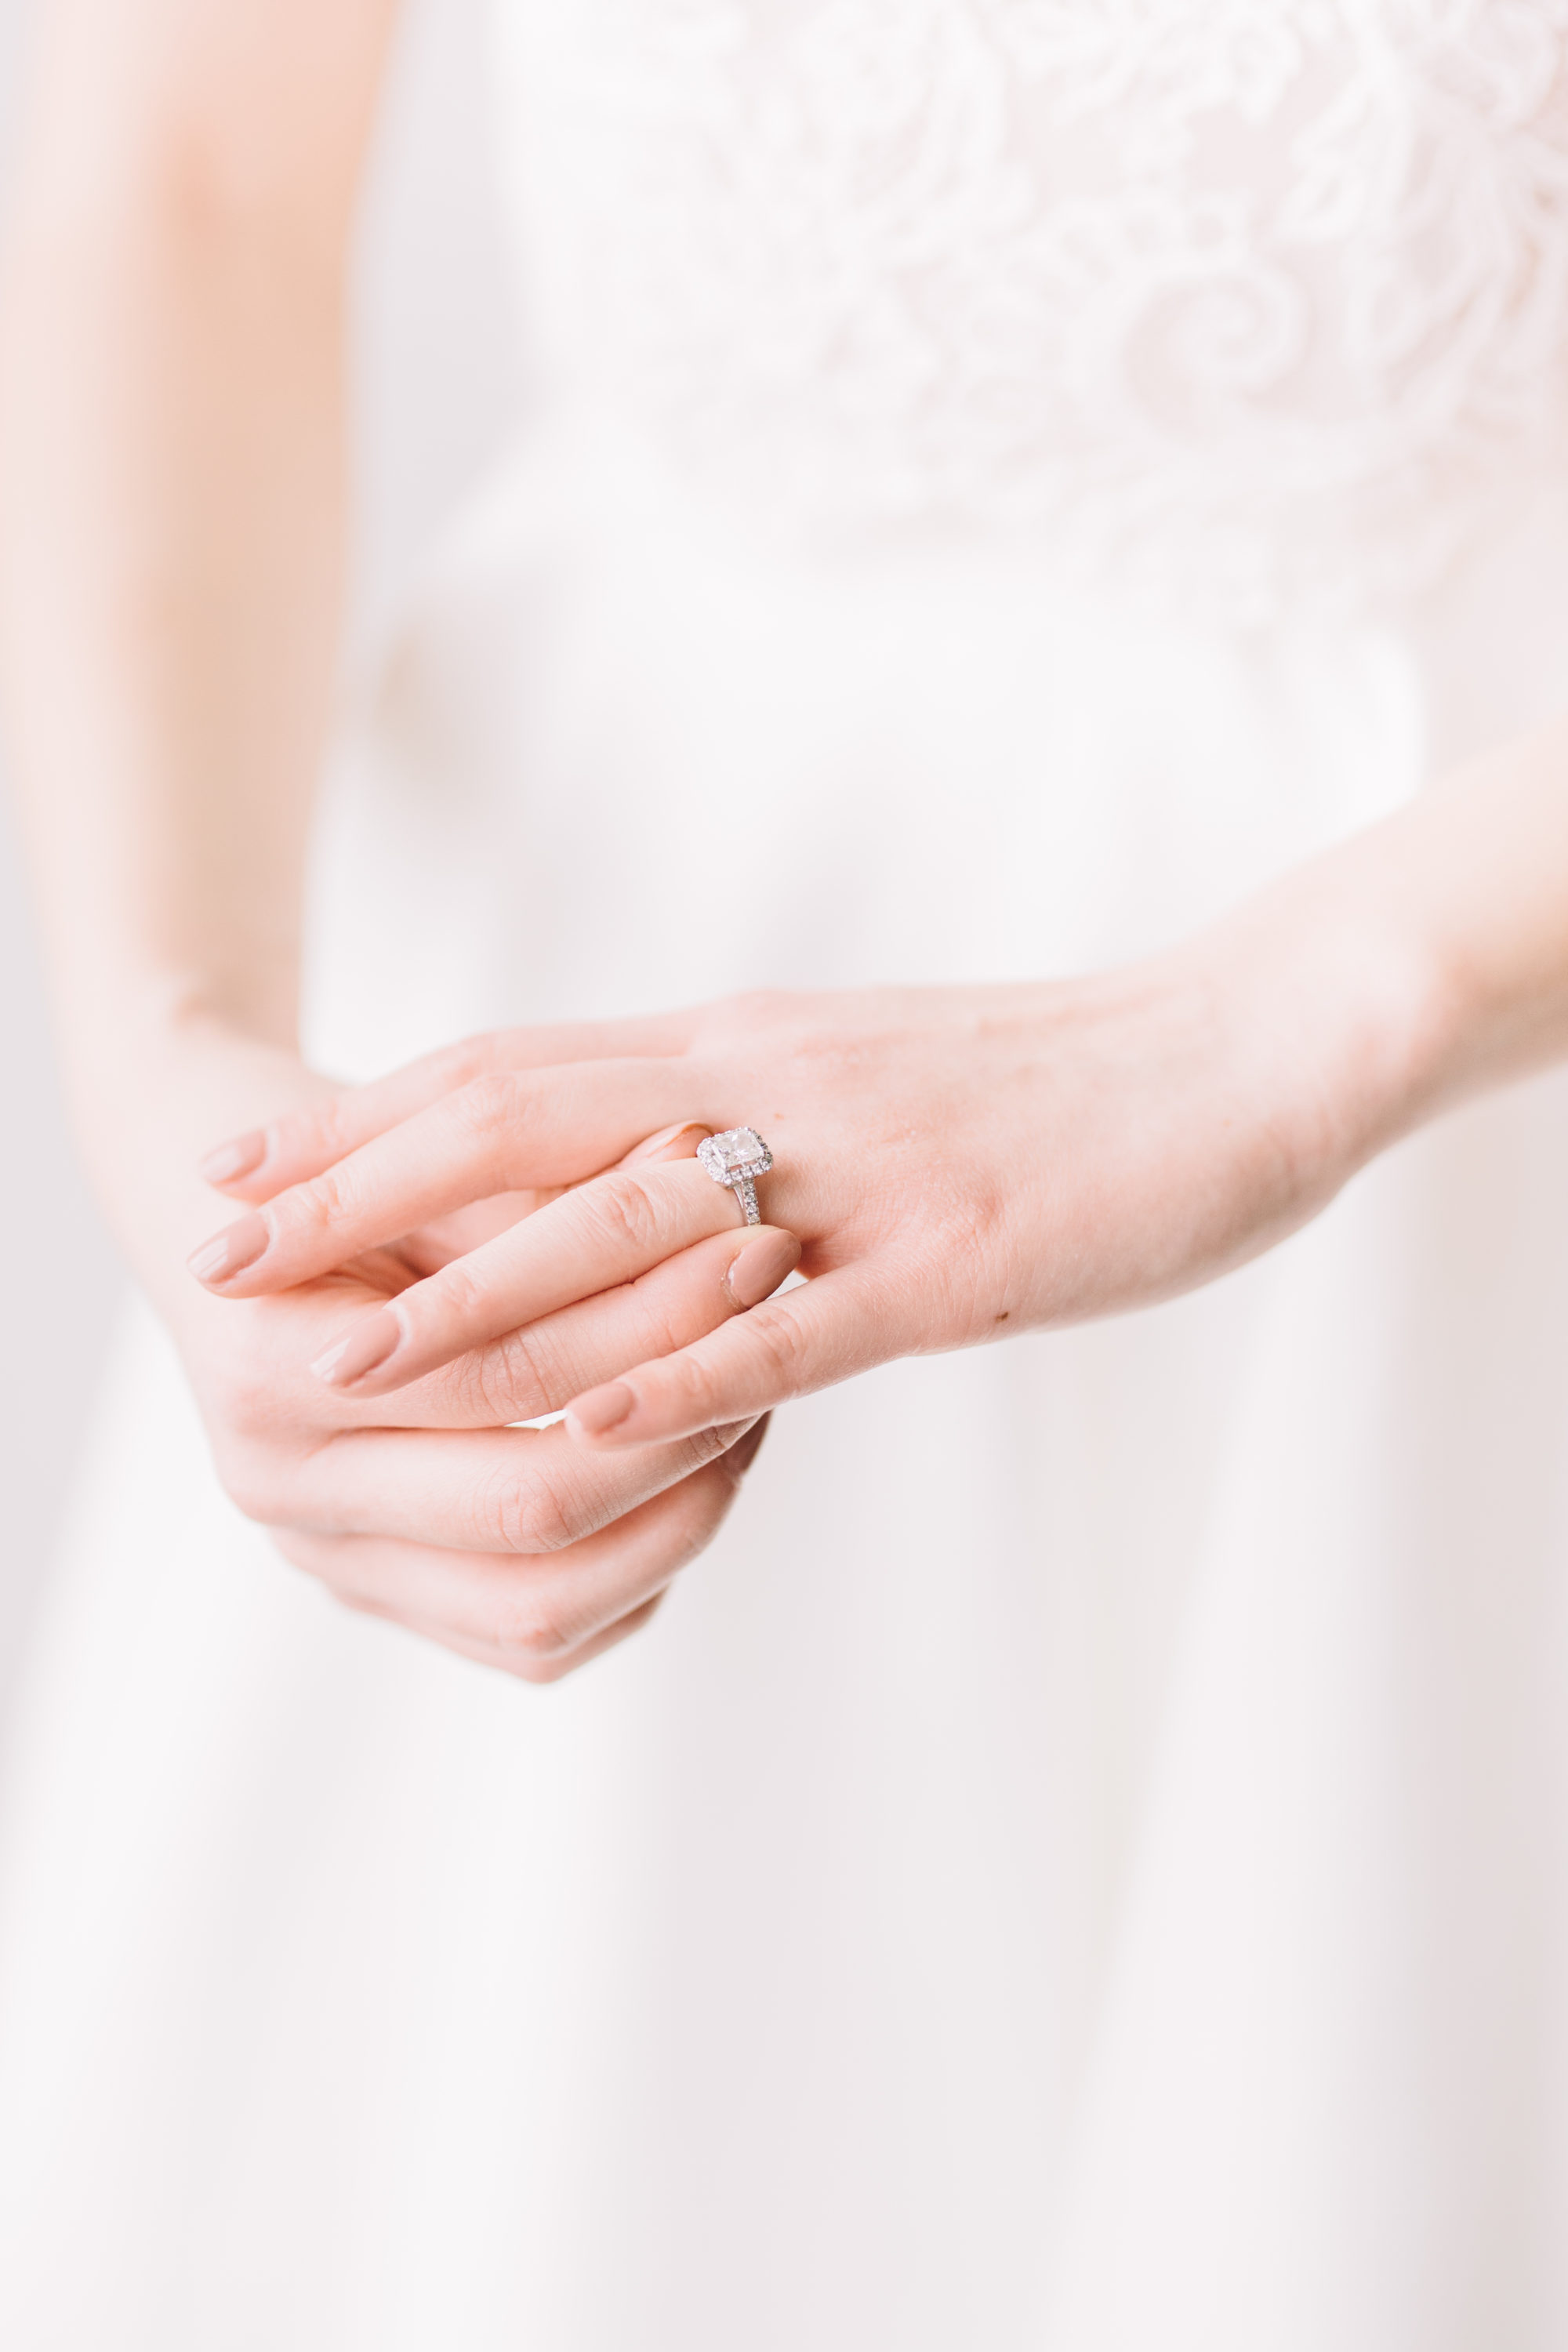 Bride adjusting engagement ring